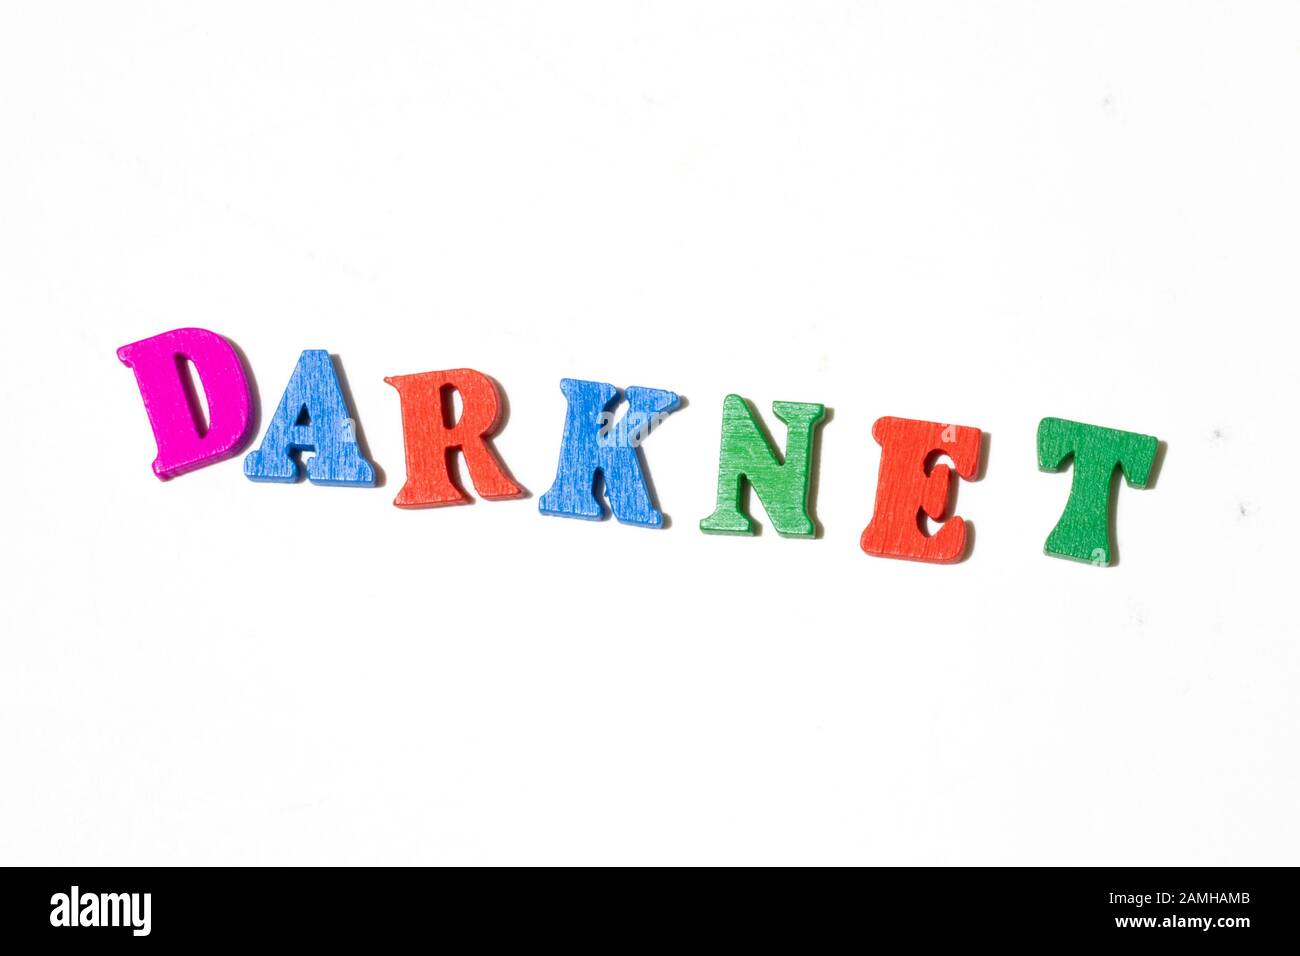 Mot darknet fait avec un tableau de lettres sur fond blanc vue de dessus. Espace de copie Banque D'Images